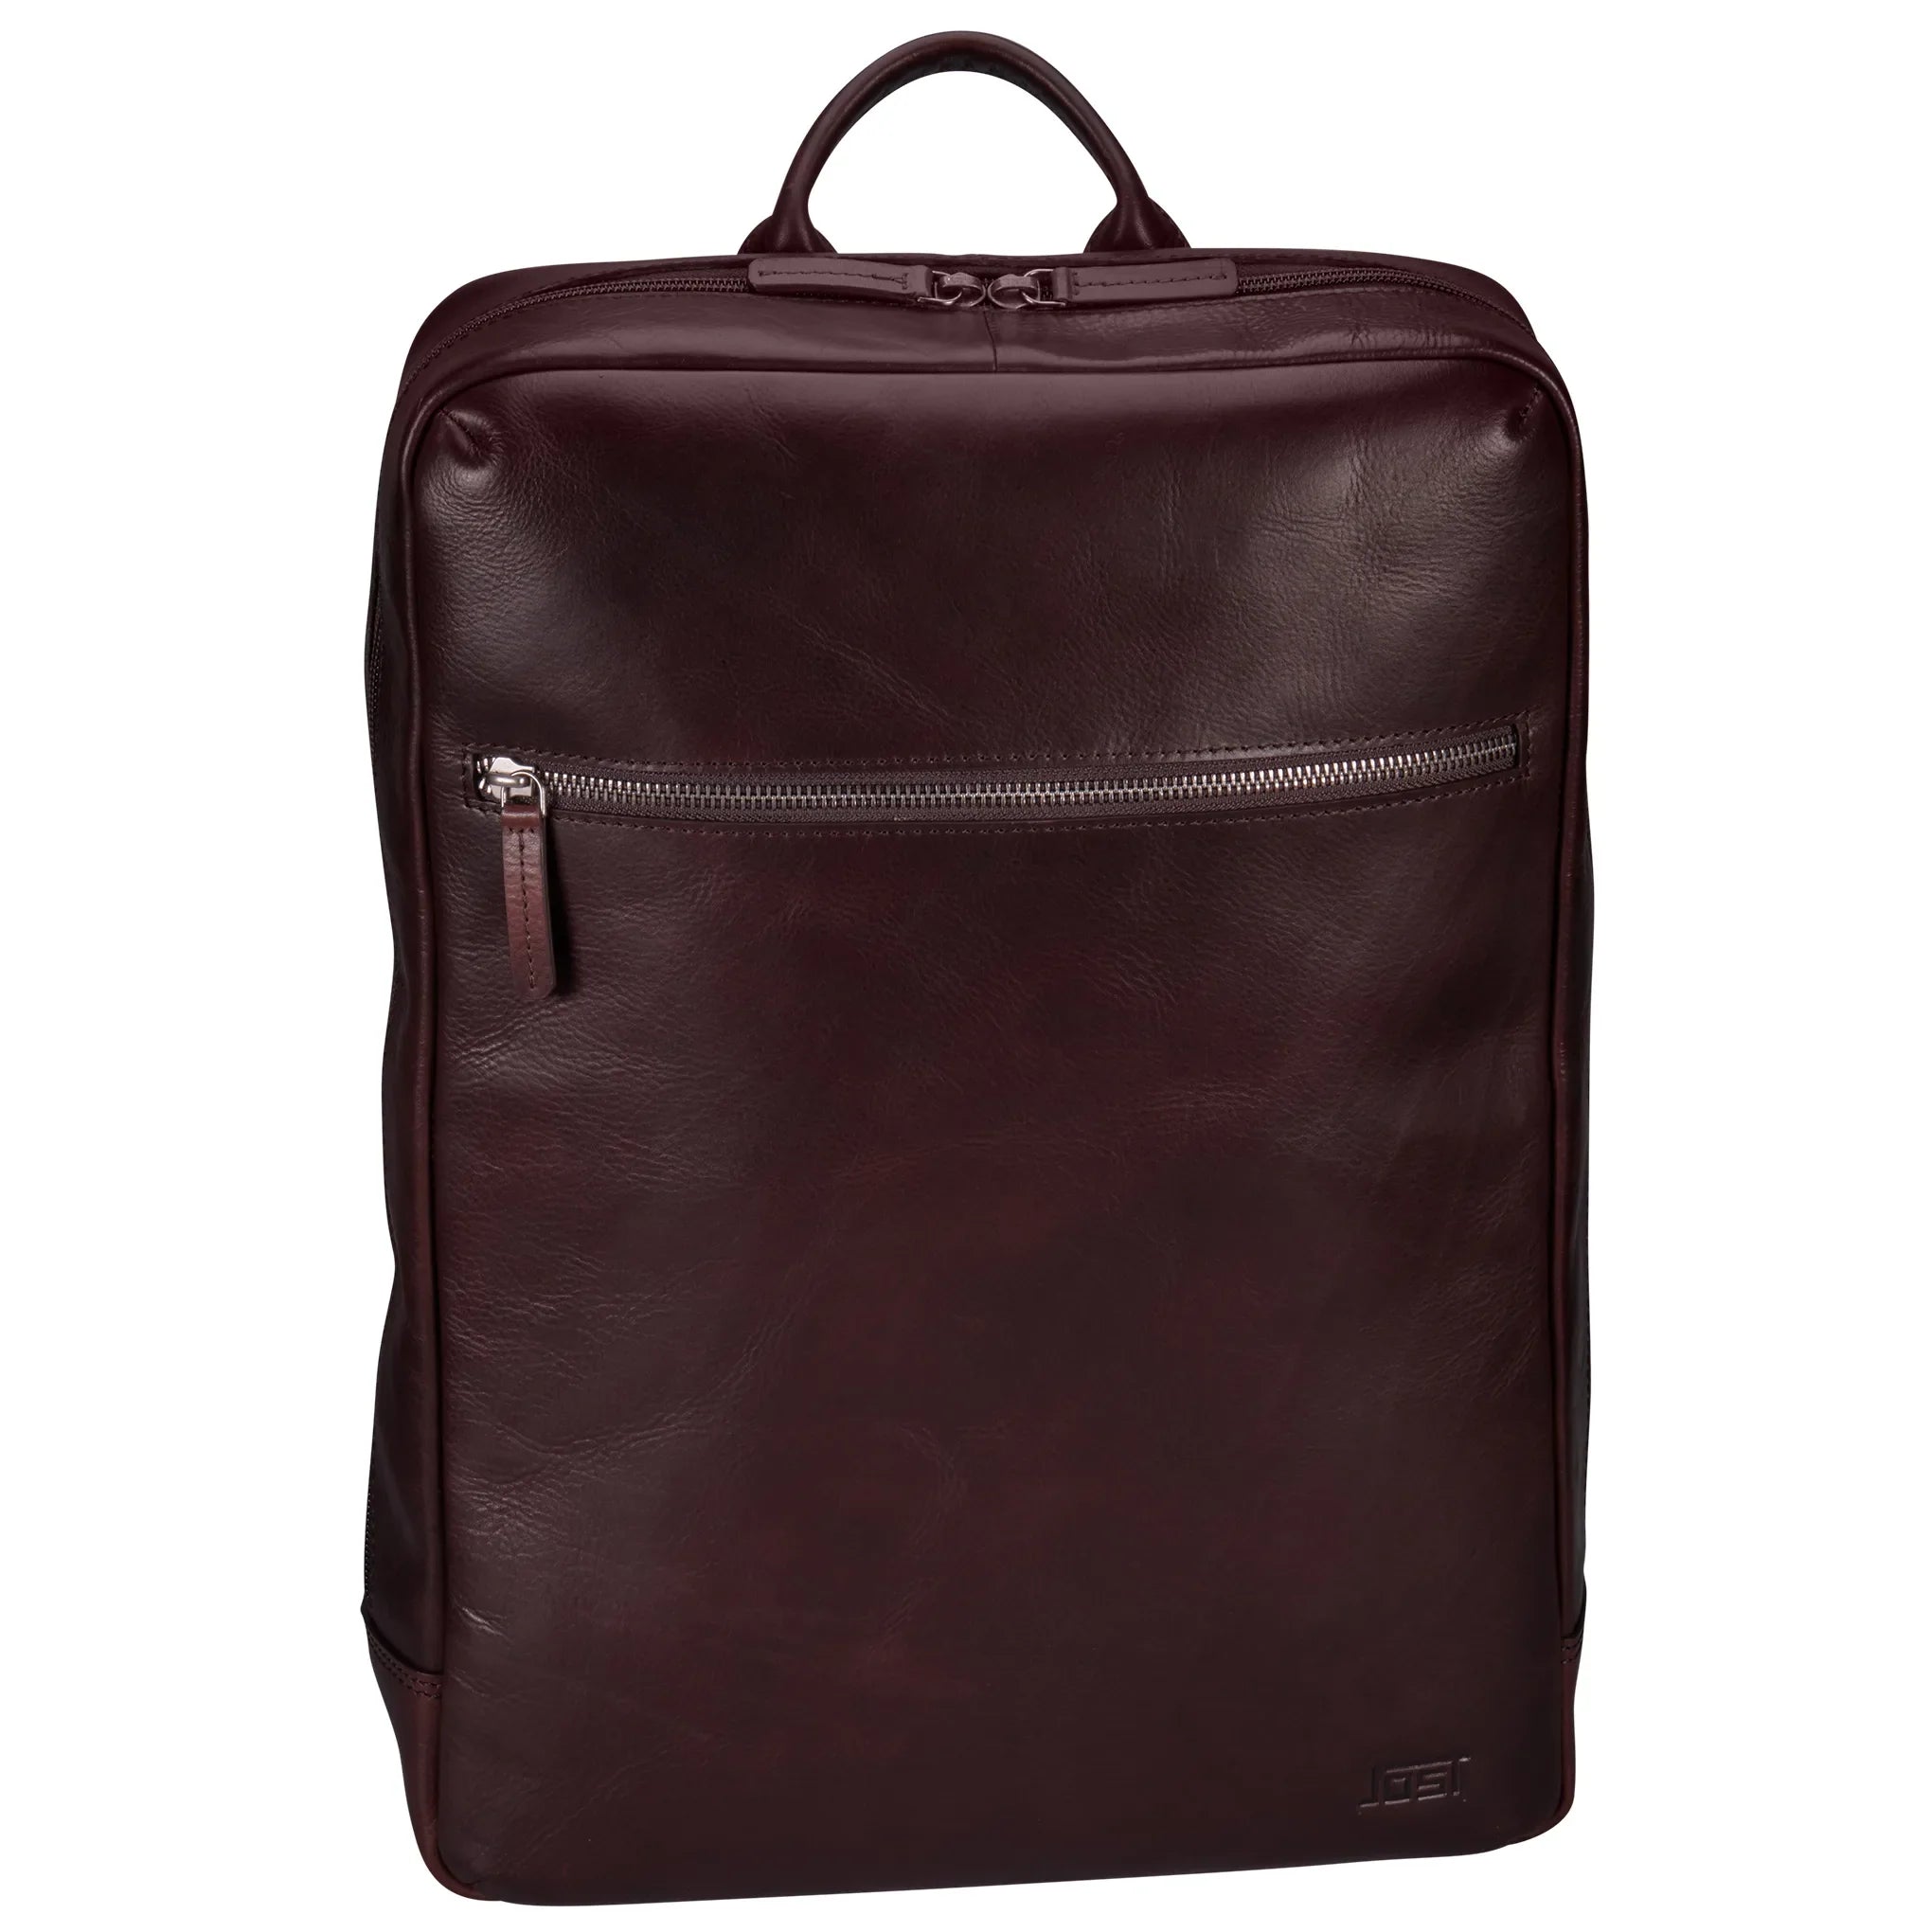 Jost Helsingborg daypack backpack 42 cm - brown